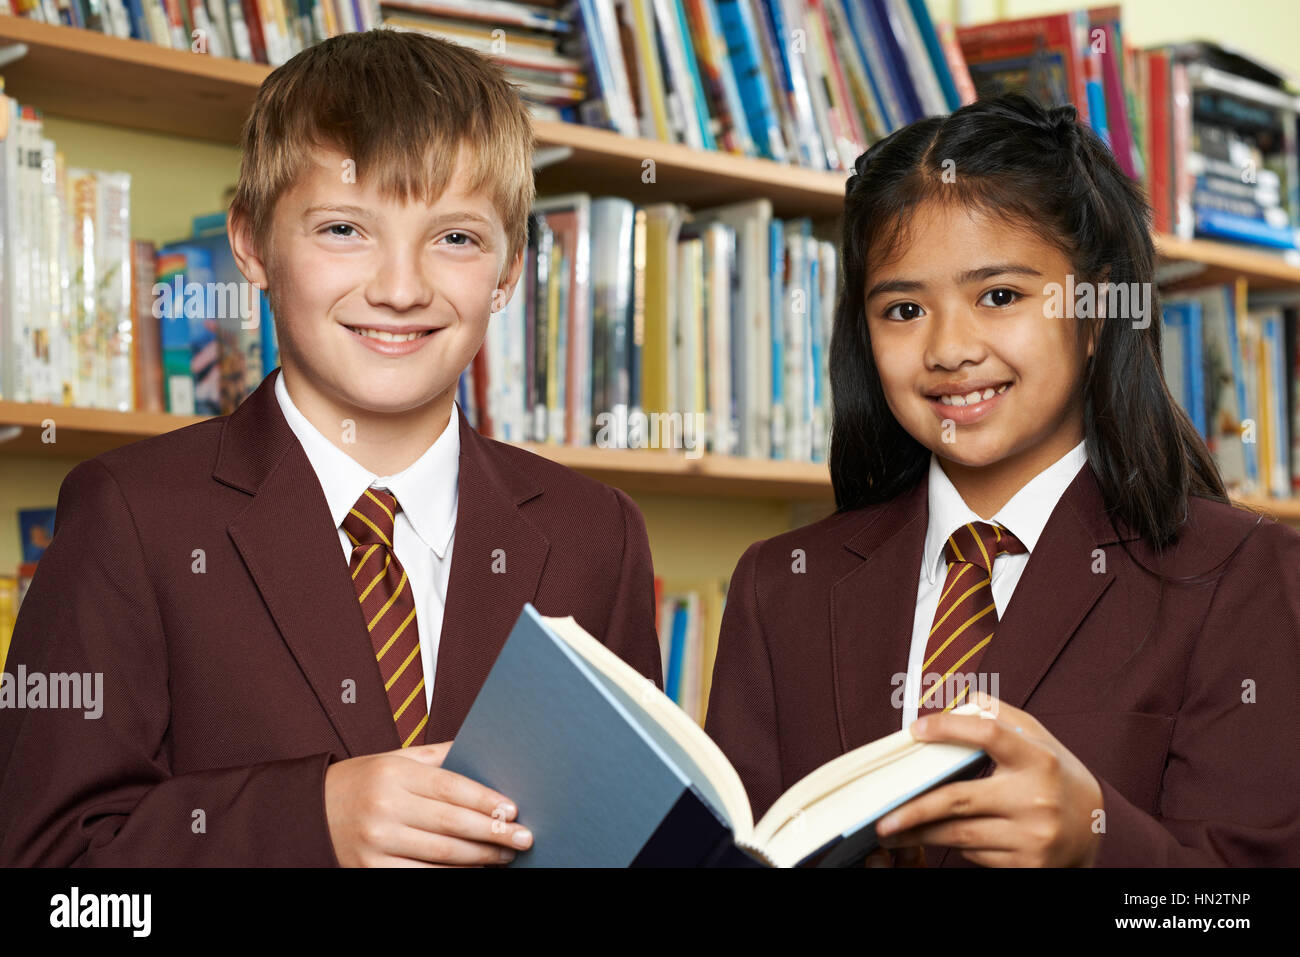 Les élèves portant des uniformes scolaires Reading Book in Library Banque D'Images